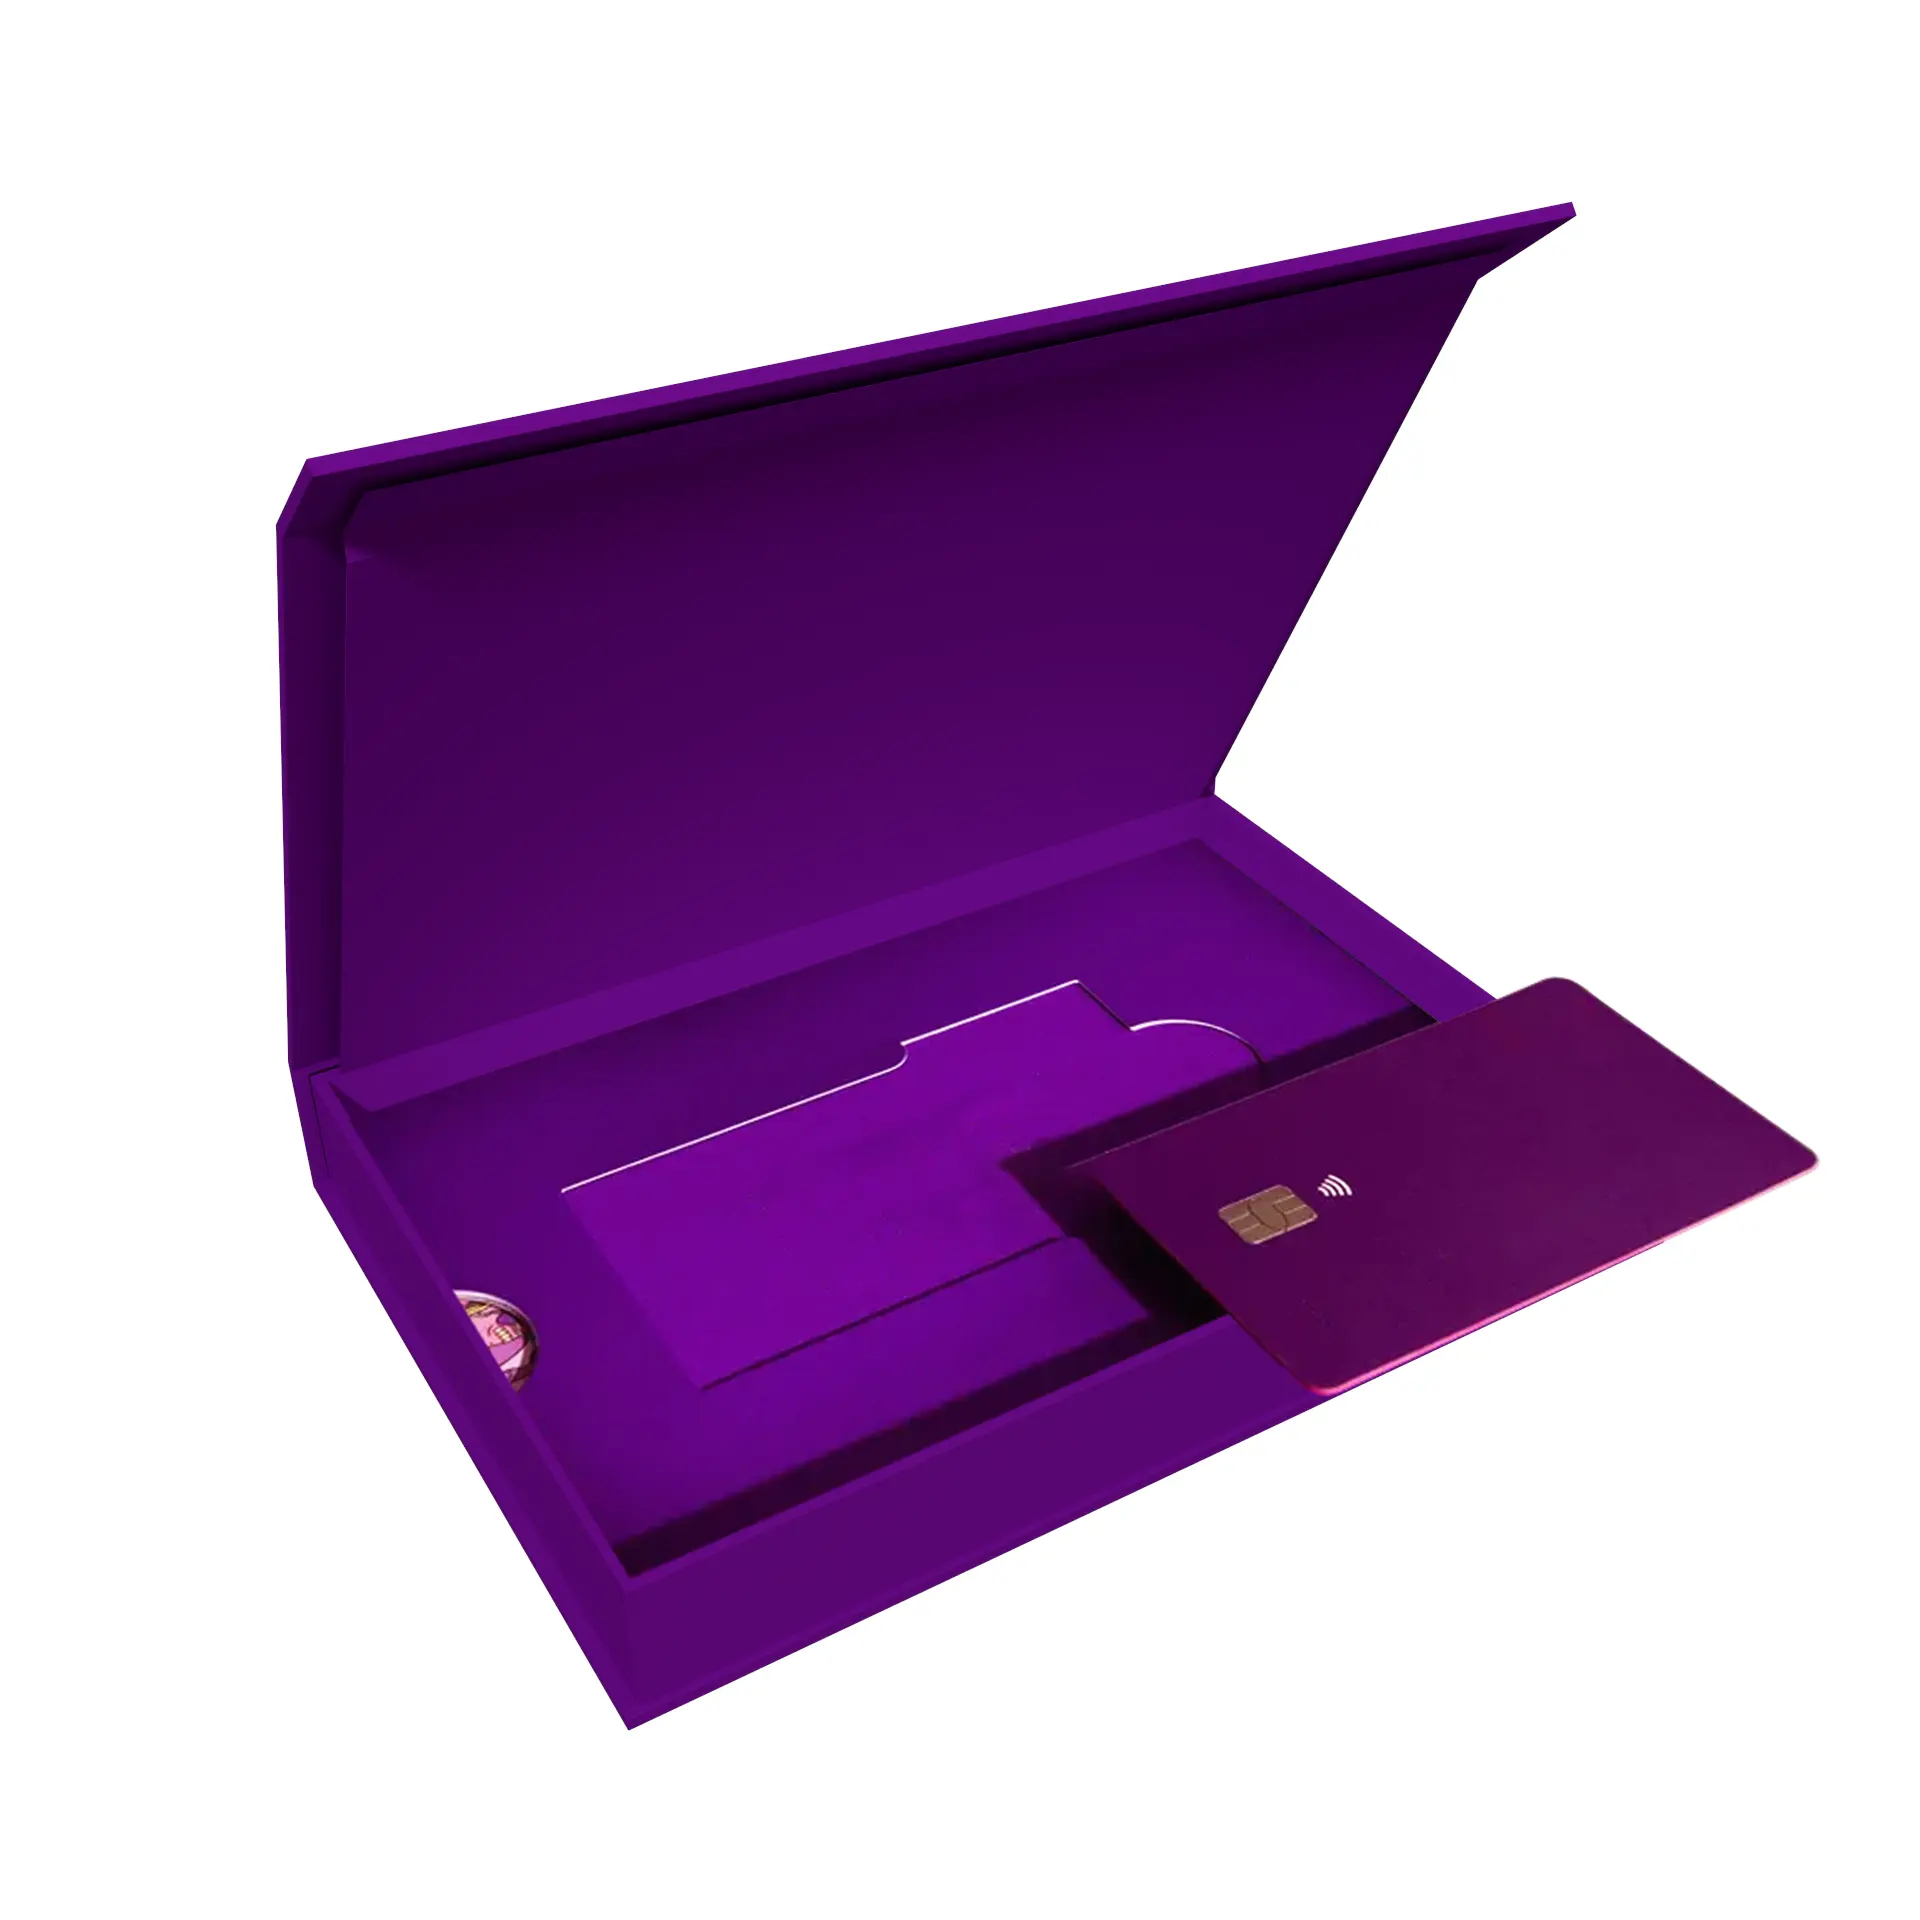 Özel Logo lüks hediye Vip kredi kartı ambalaj kutusu manyetik siyah iş beyaz düğün sert kağıt Metal karton tutucu